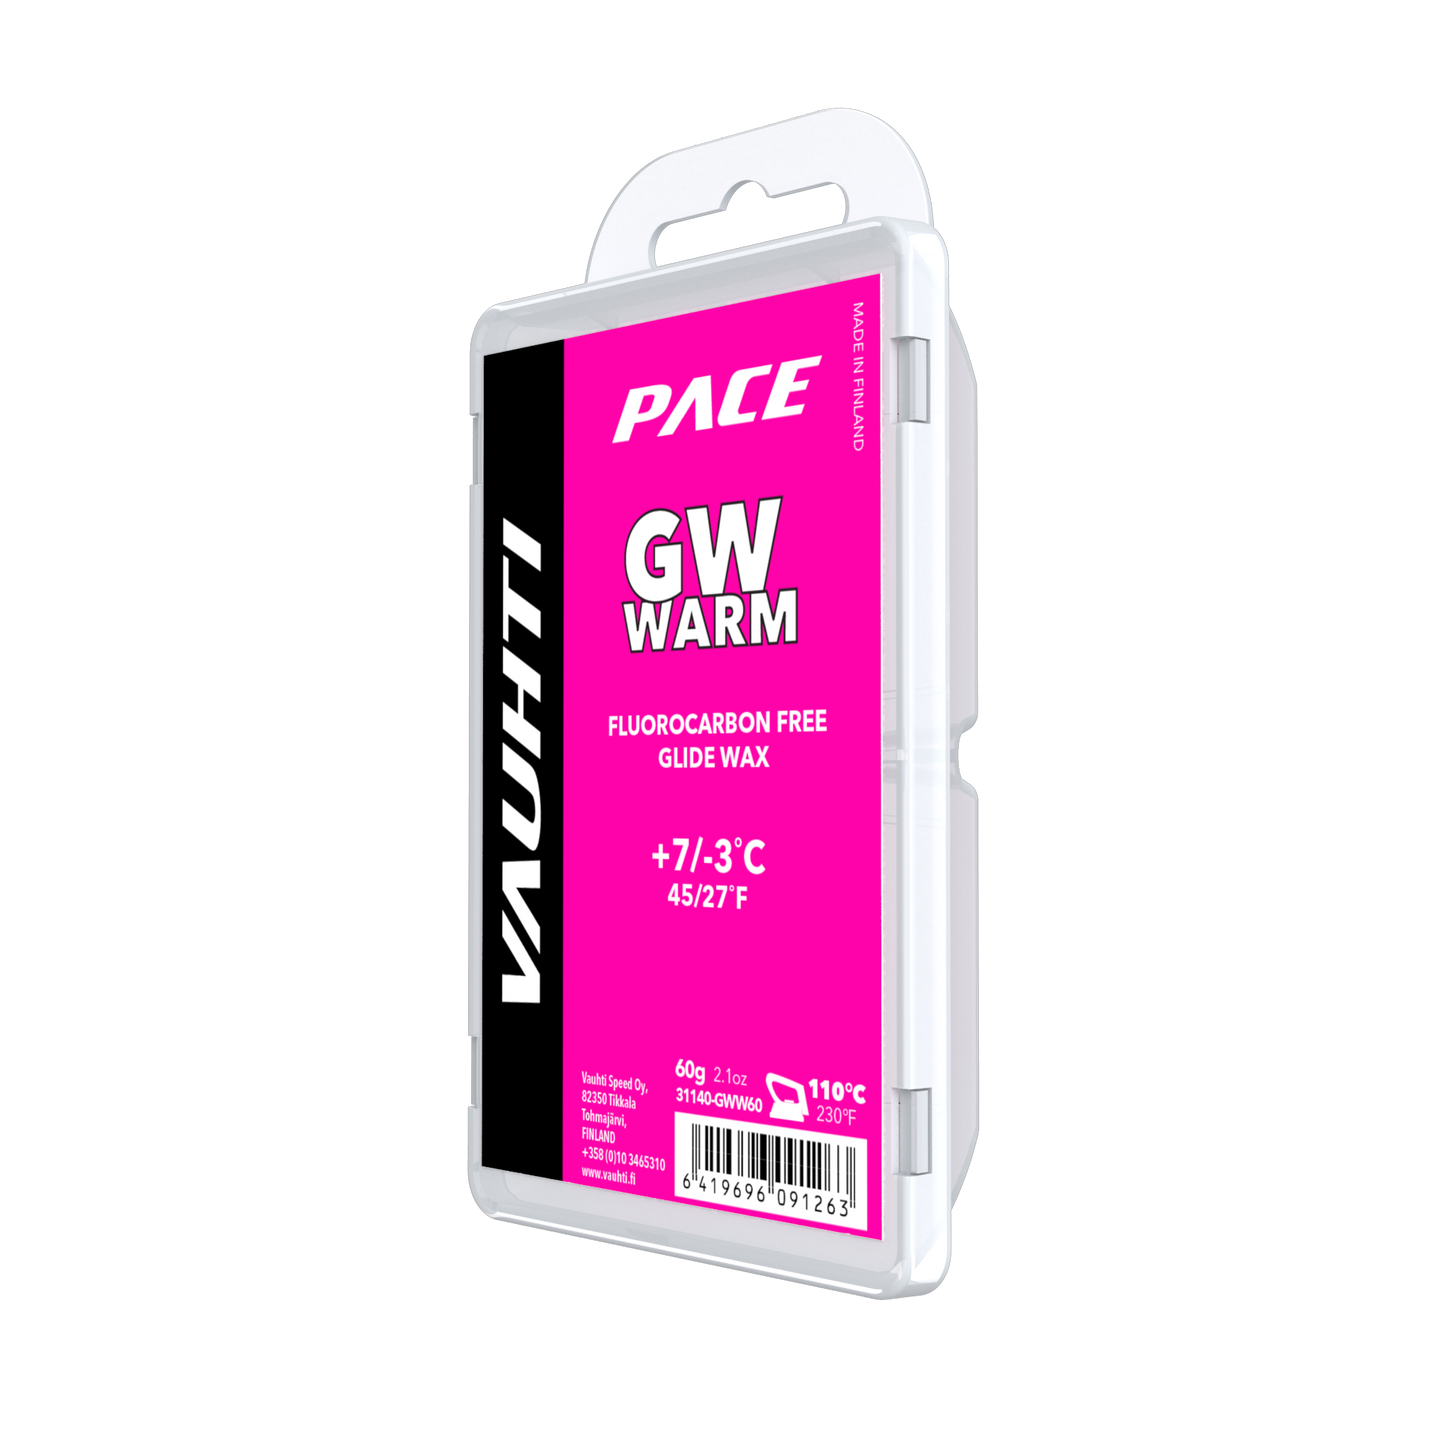 Package of GW WARM MELT WAX